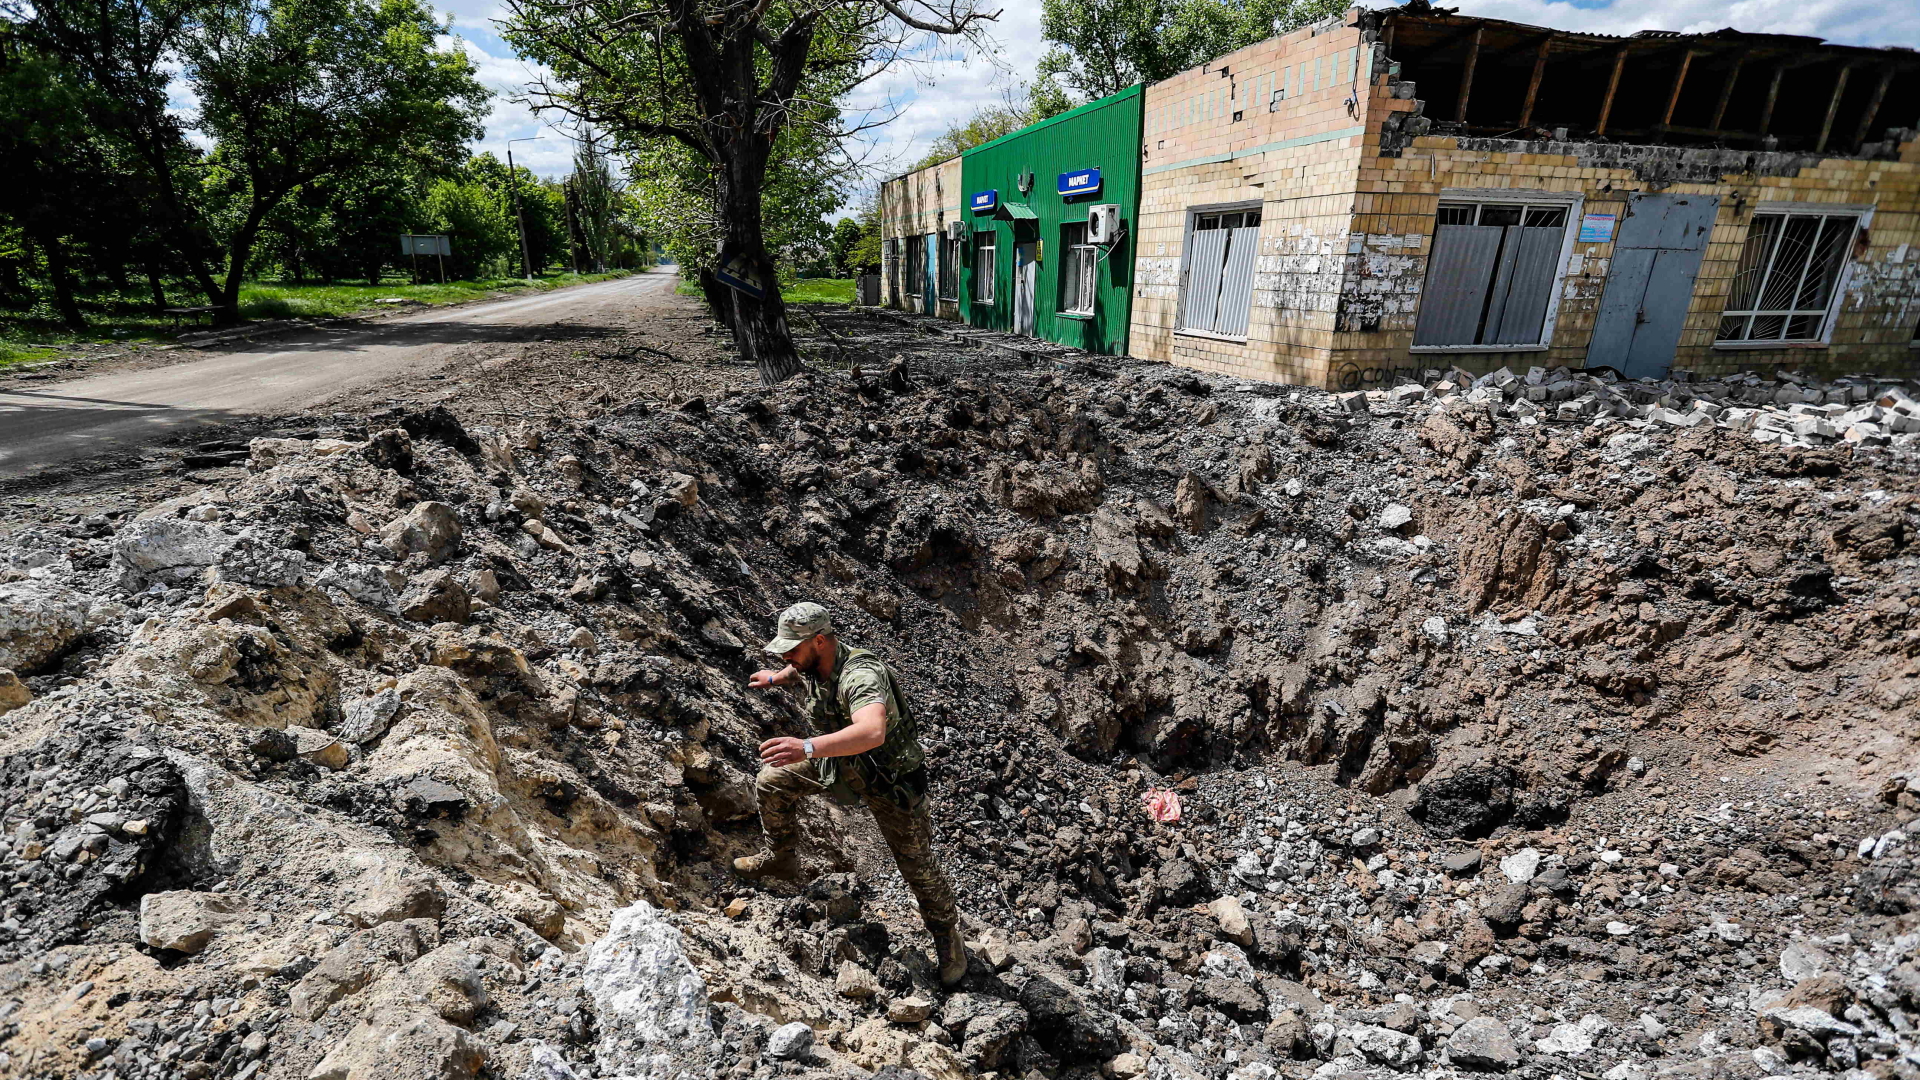 Ein ukrainischer Soldat einer Aufklärungseinheit begutachtet ein riesiges Loch, das durch einen russischen Luftangriff am Rande der Donbass-Region entstanden sein soll (Archivbild).  | dpa